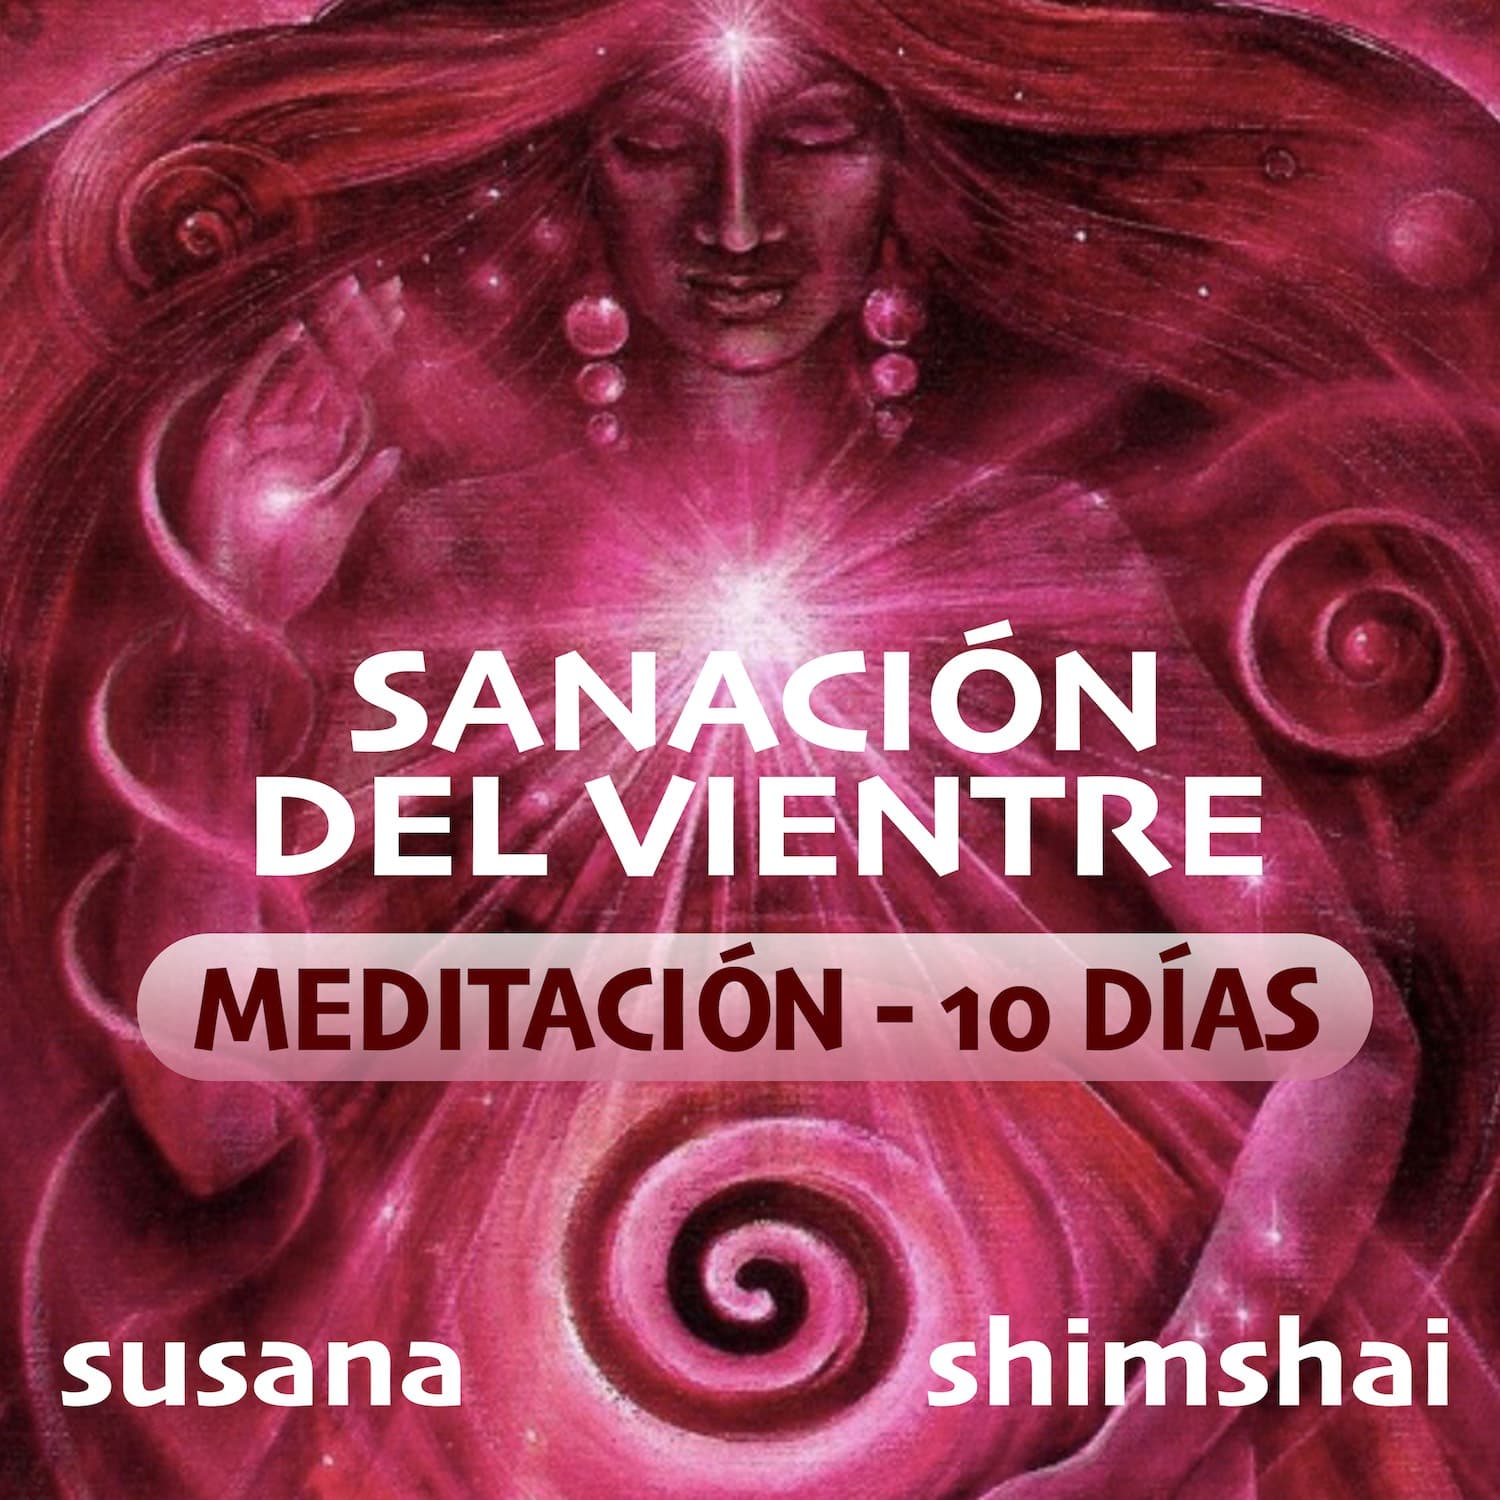 Una serie de 10 meditaciones para sanar el sagrado vientre, guiada por Susana y acompañada por musica de Shimshai. 